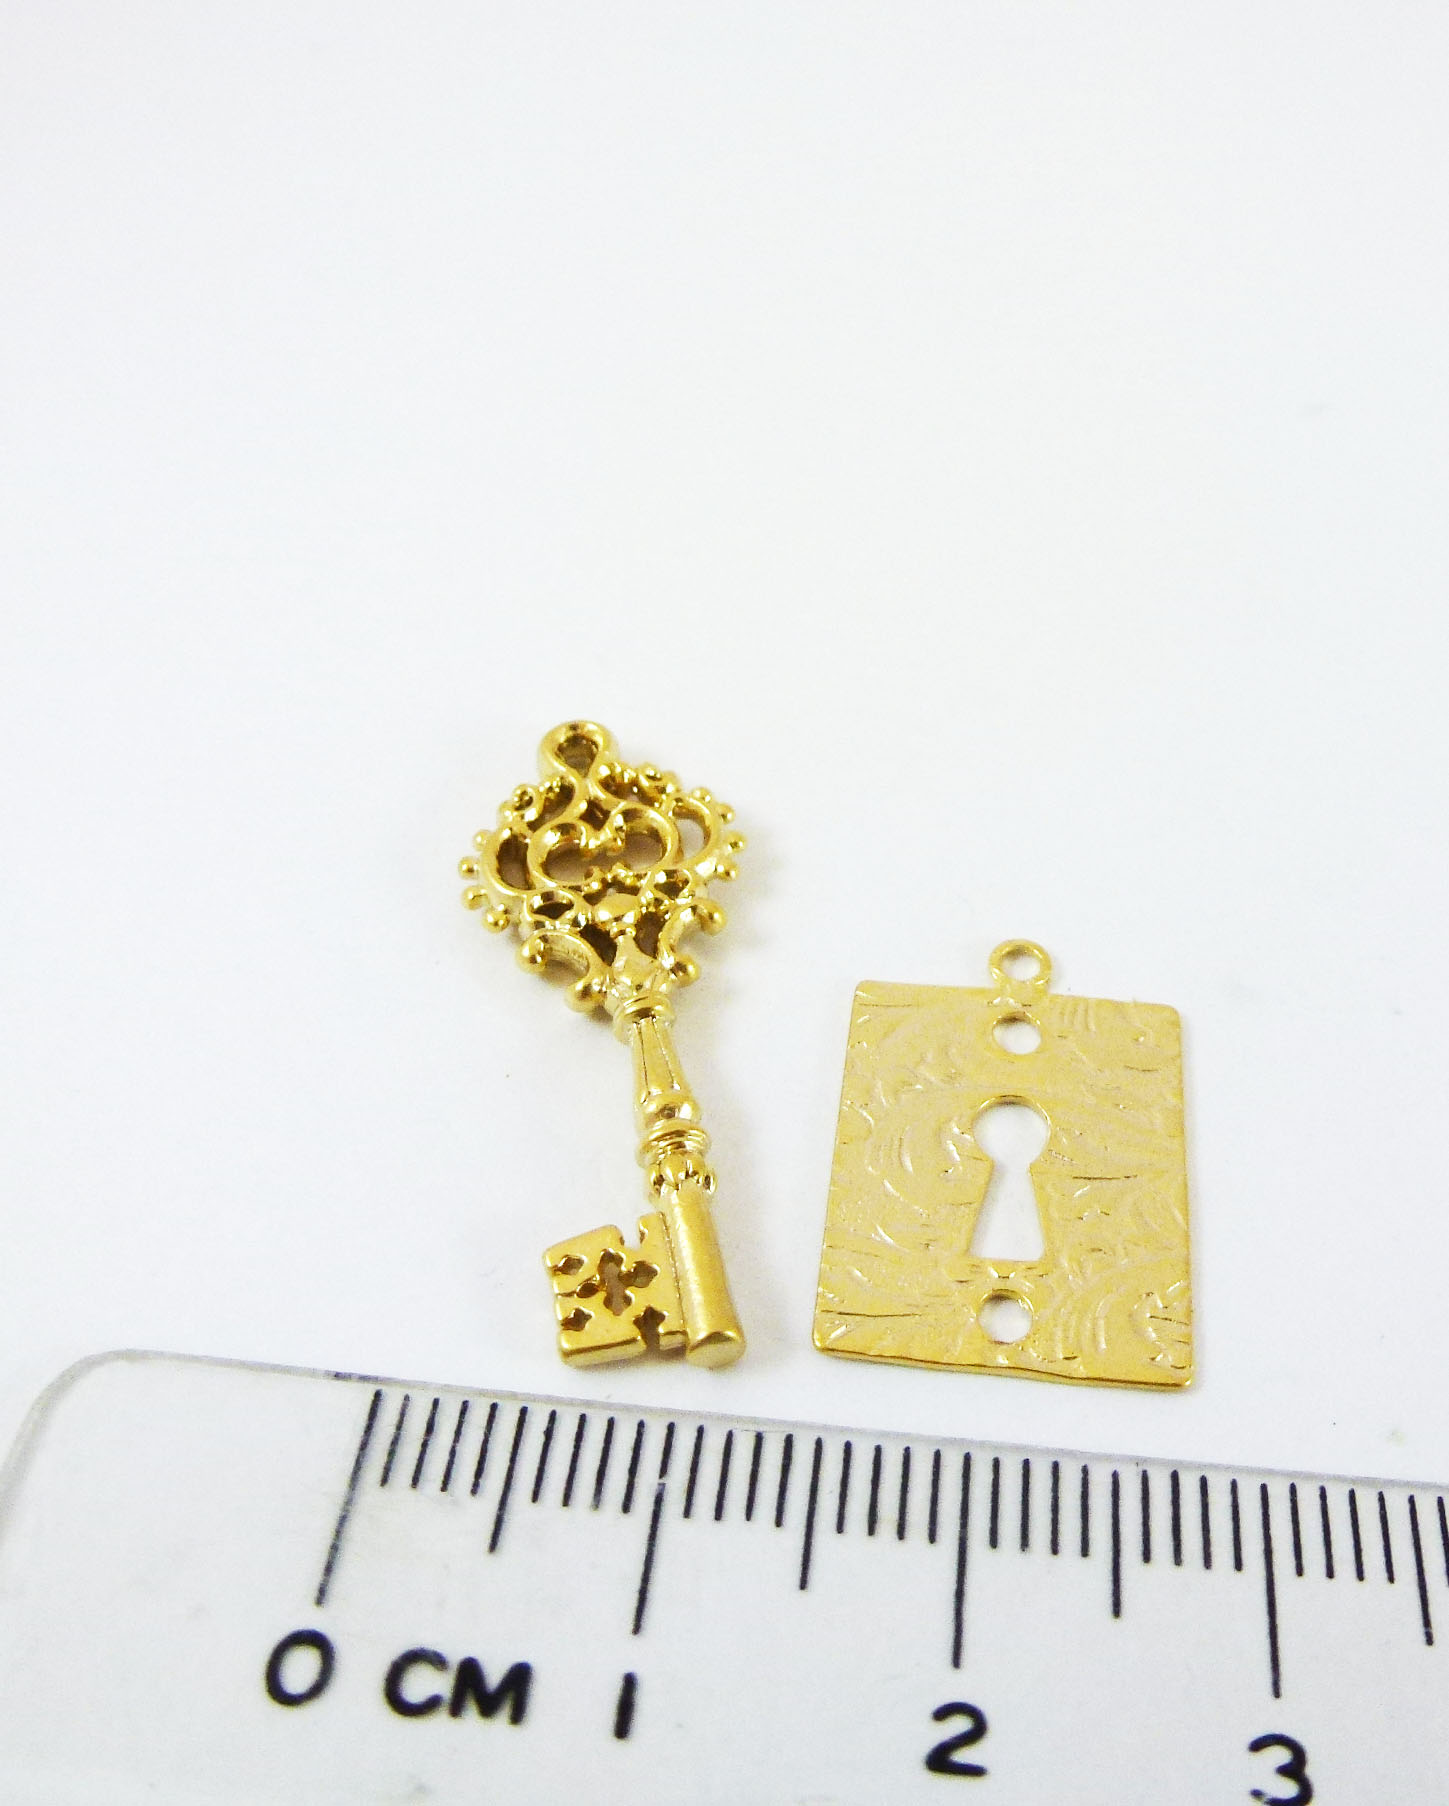 銅鍍霧金雕花鑰匙組